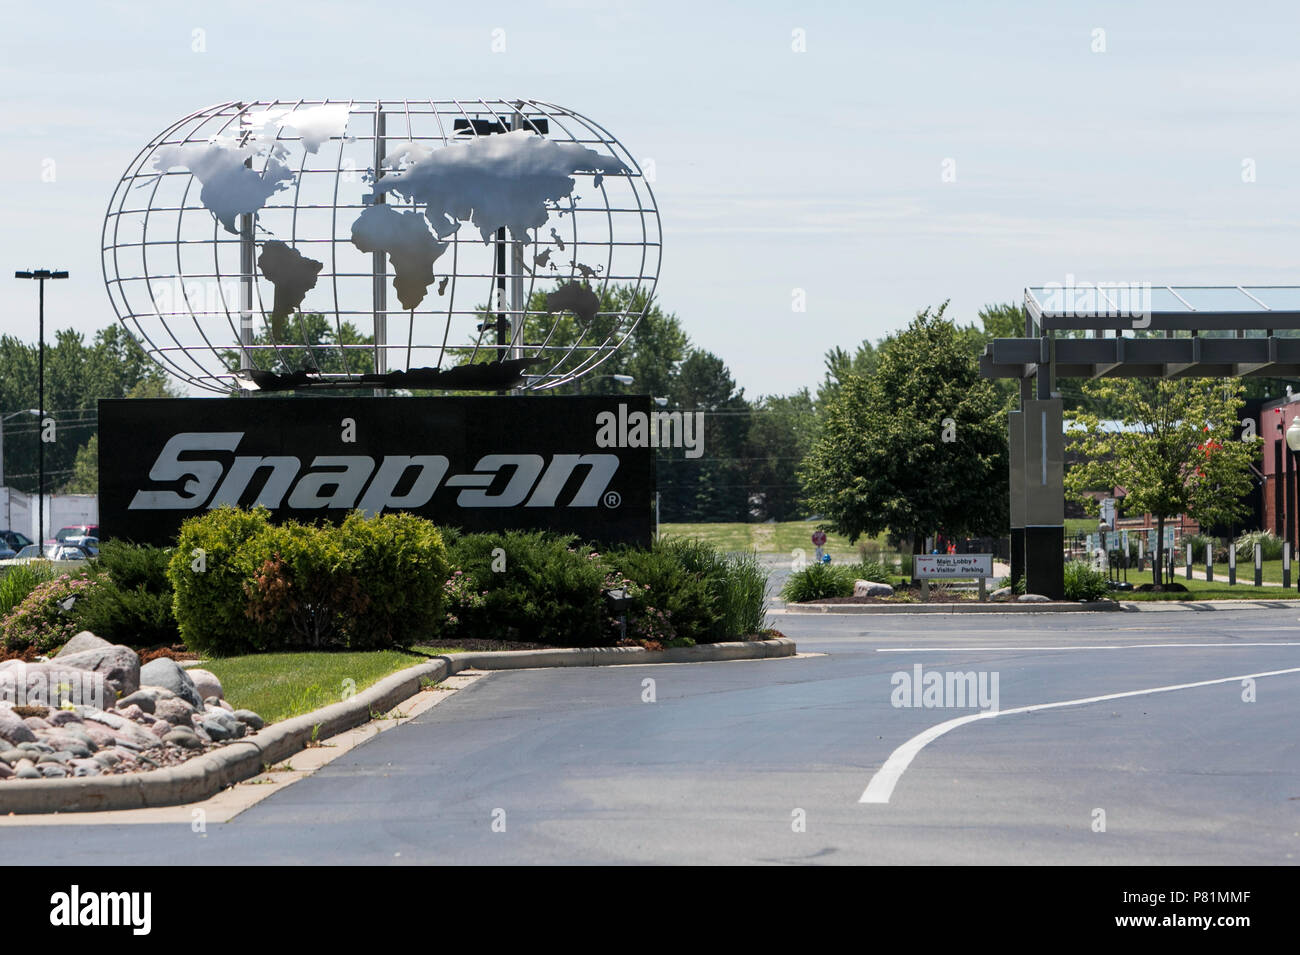 Ein logo Zeichen außerhalb des Hauptsitzes der Snap-on, Inc., die in Kenosha, Wisconsin, am 23. Juni 2018. Stockfoto